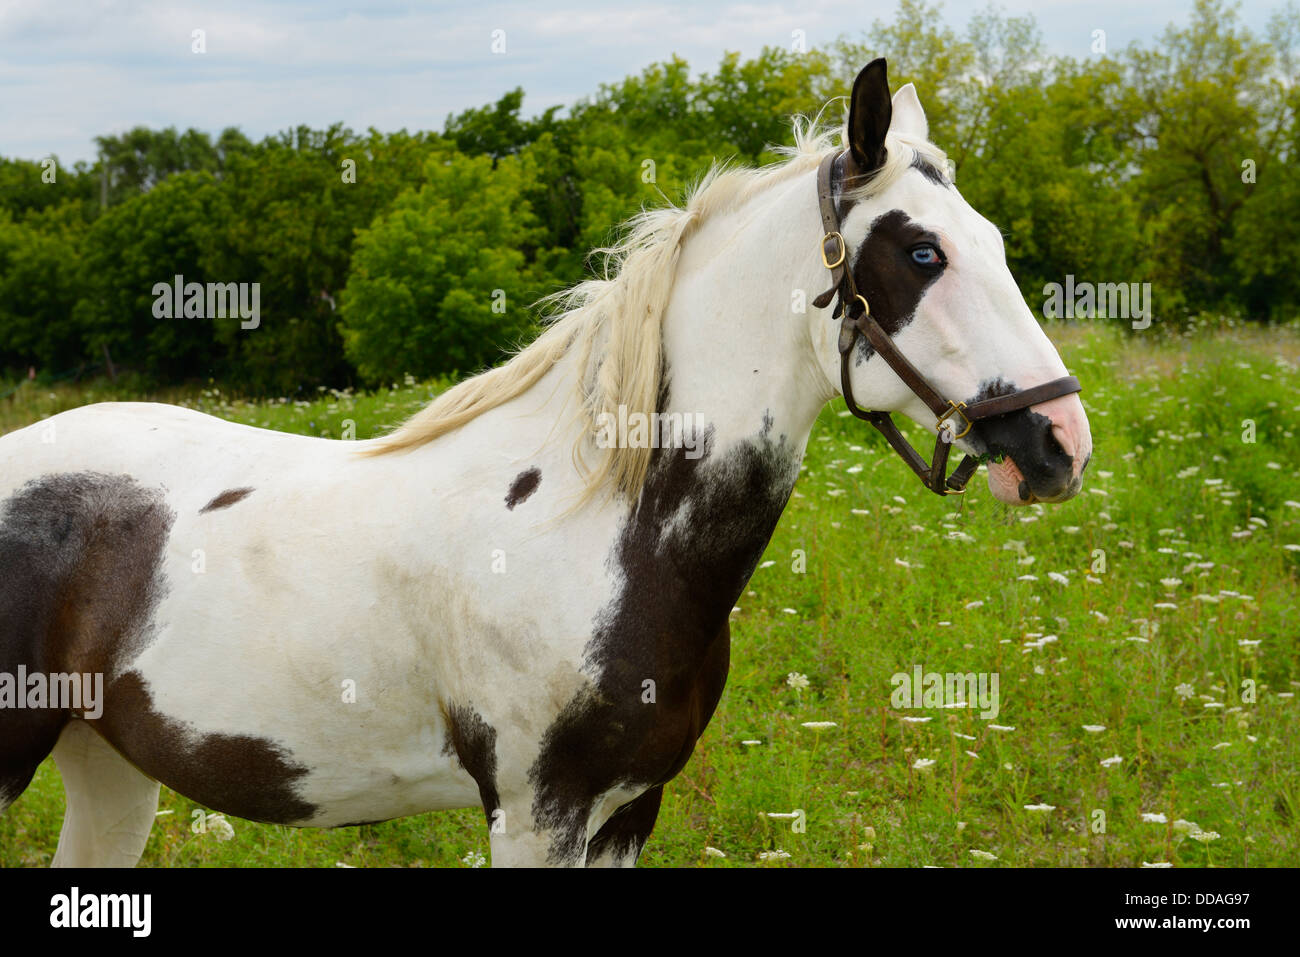 Un cheval aux yeux bleus debout dans un champ pays ontario canada Banque D'Images